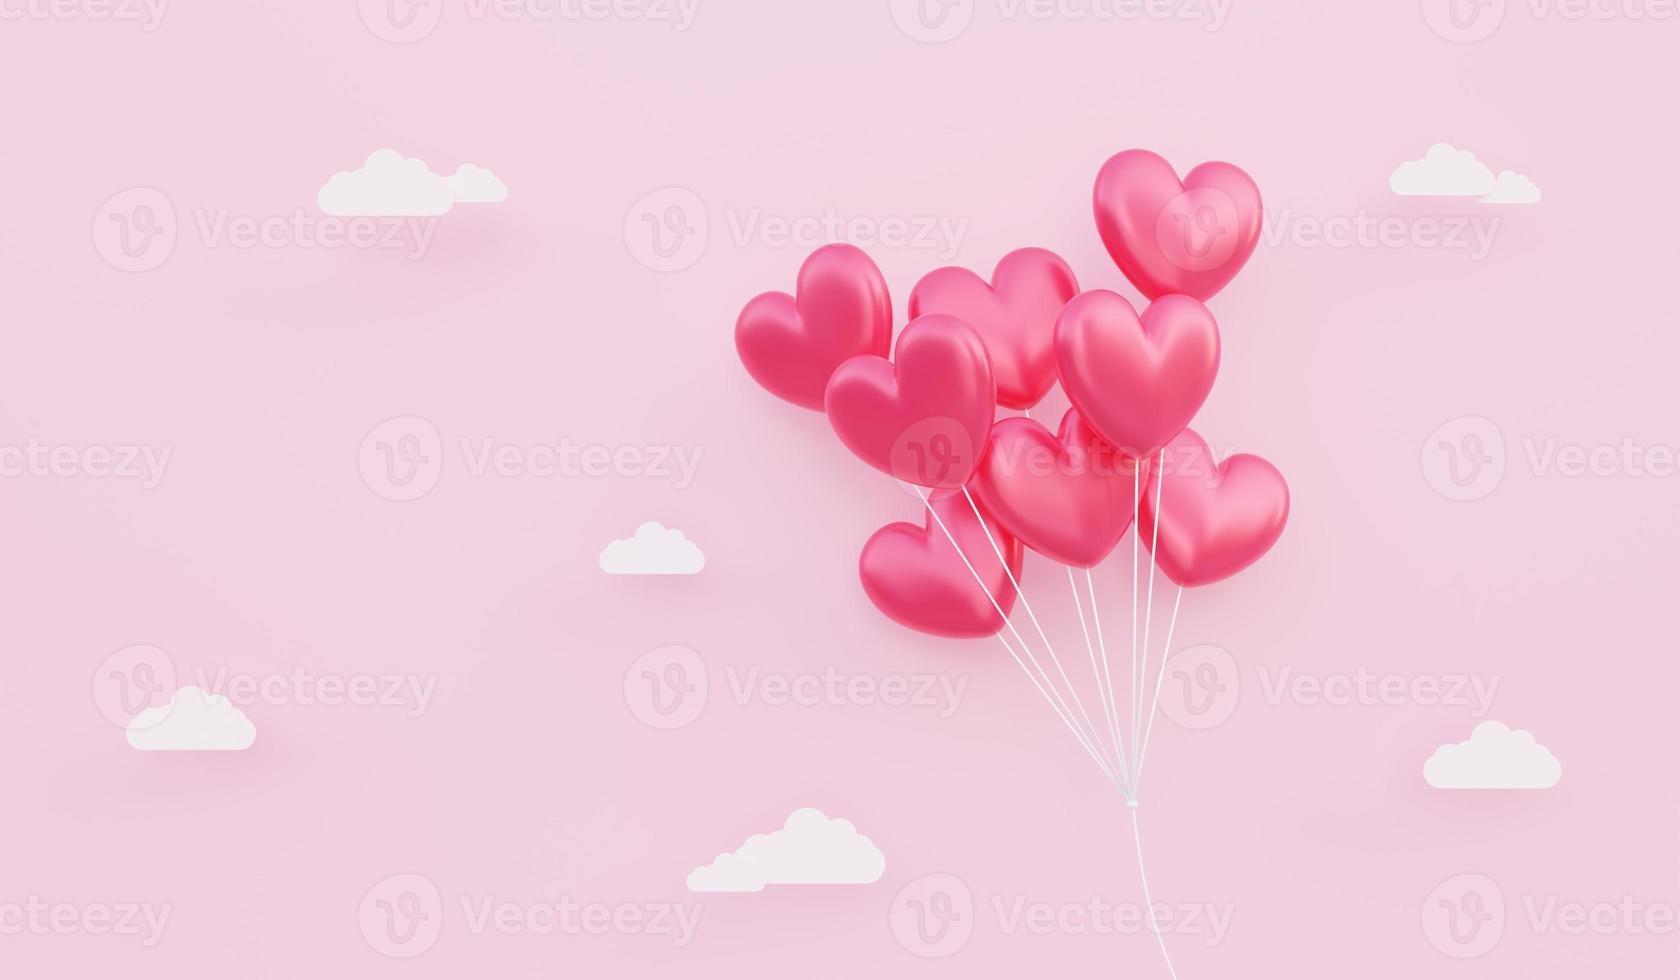 Saint Valentin, fond de concept d'amour, illustration 3d d'un bouquet de ballons en forme de coeur rouge flottant dans le ciel photo